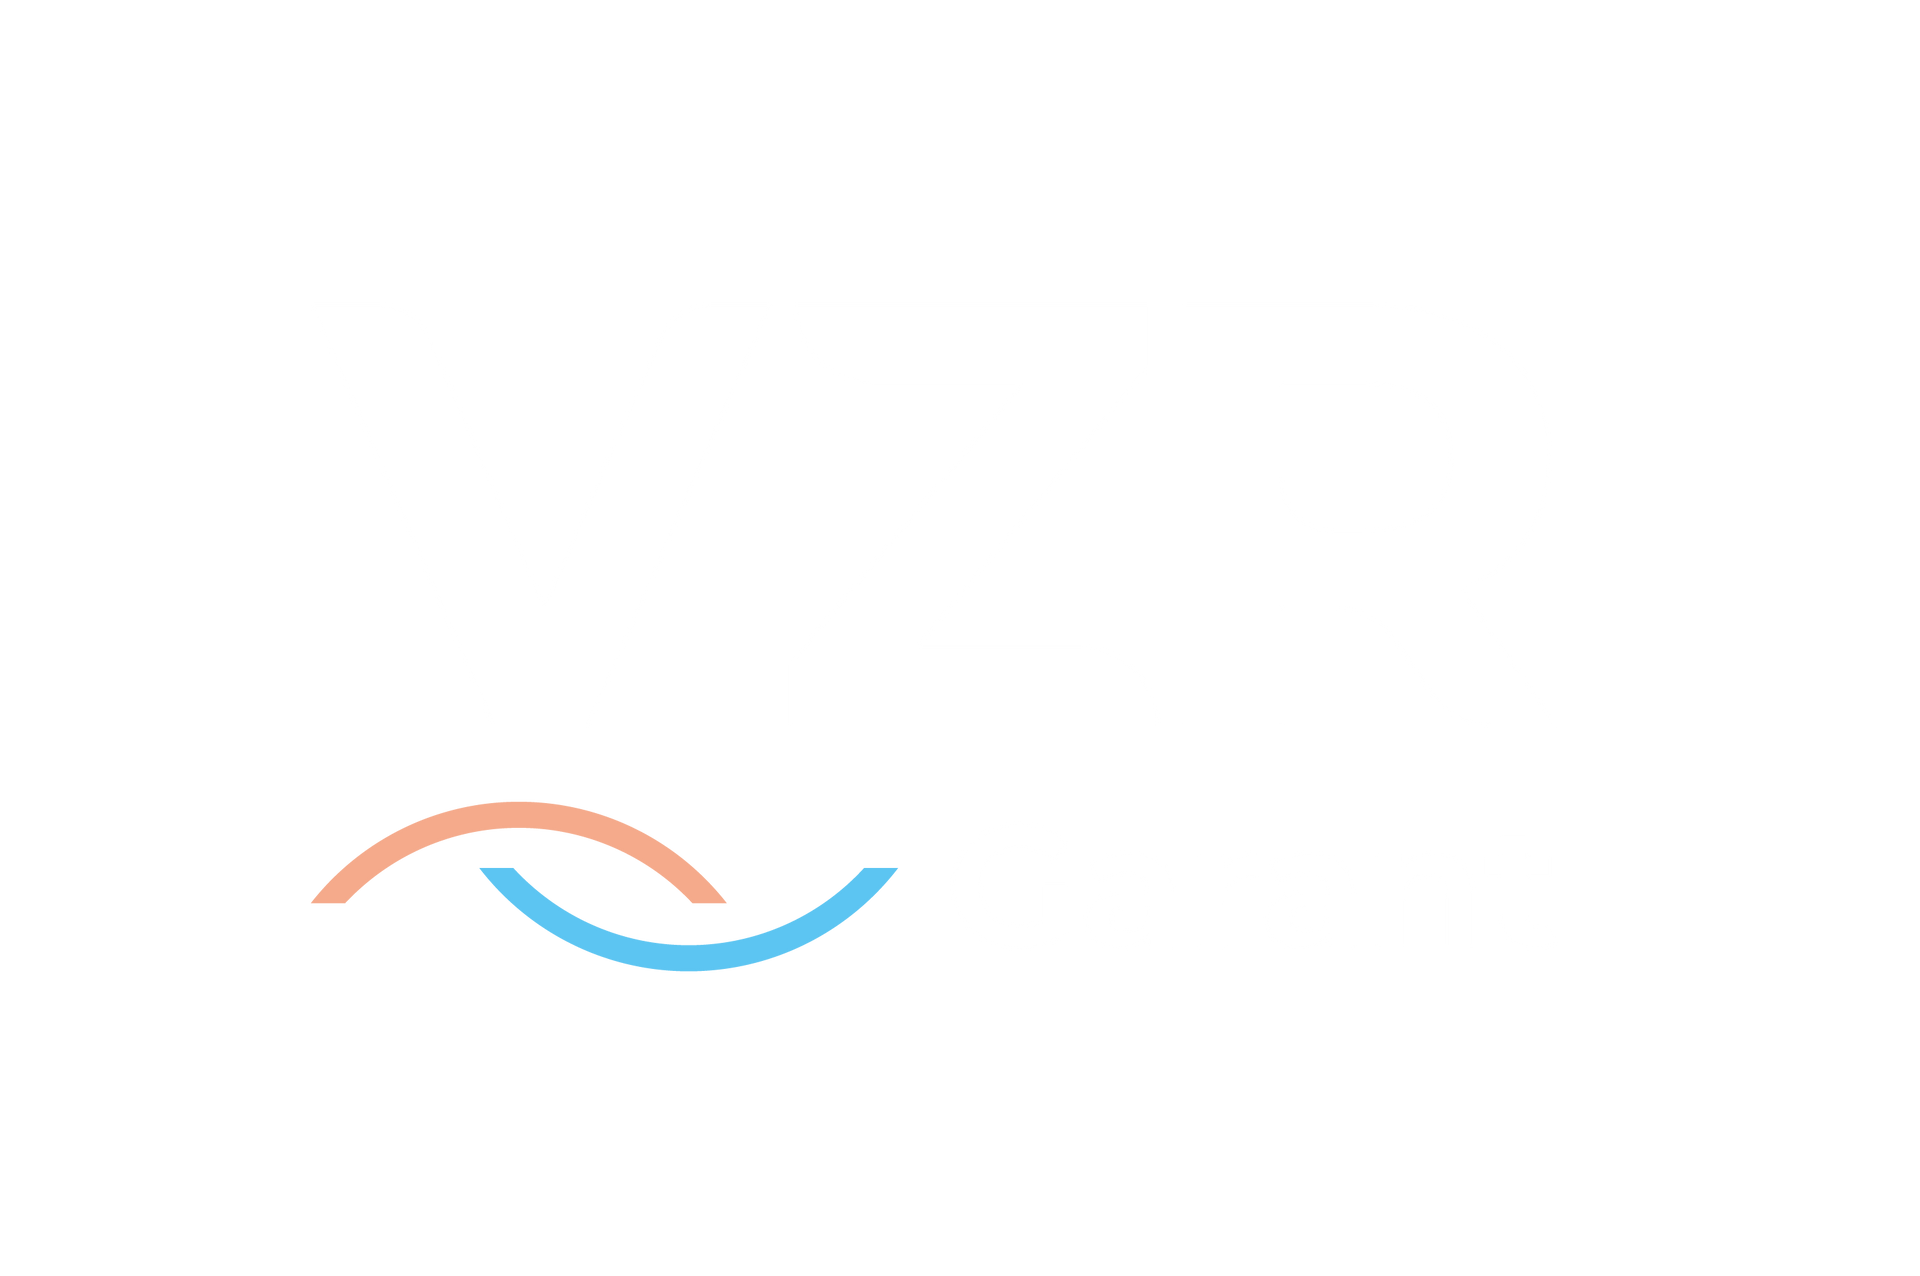 VZR garantiefonds met twee gekleurde lijnen erin verwerkt